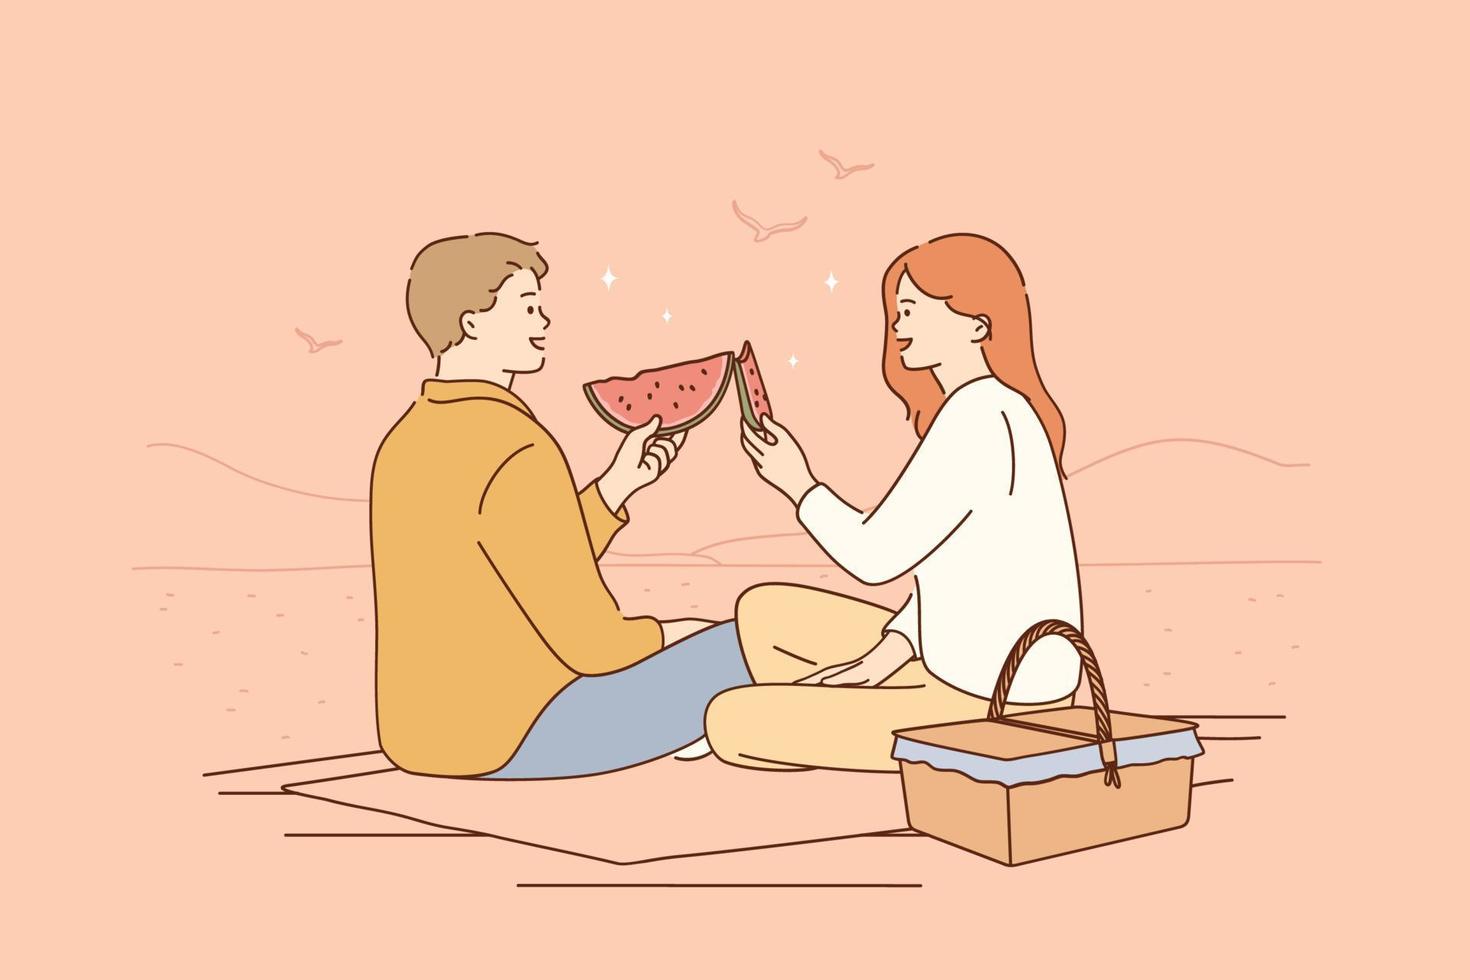 romantisches dating, picknick, sommerzeitkonzept. Cartoon-Figuren des jungen glücklichen Paars, die auf dem Boden sitzen und ein Picknick haben, reden, lächeln und reife frische Wassermelonen zusammen essen, Vektorillustration vektor